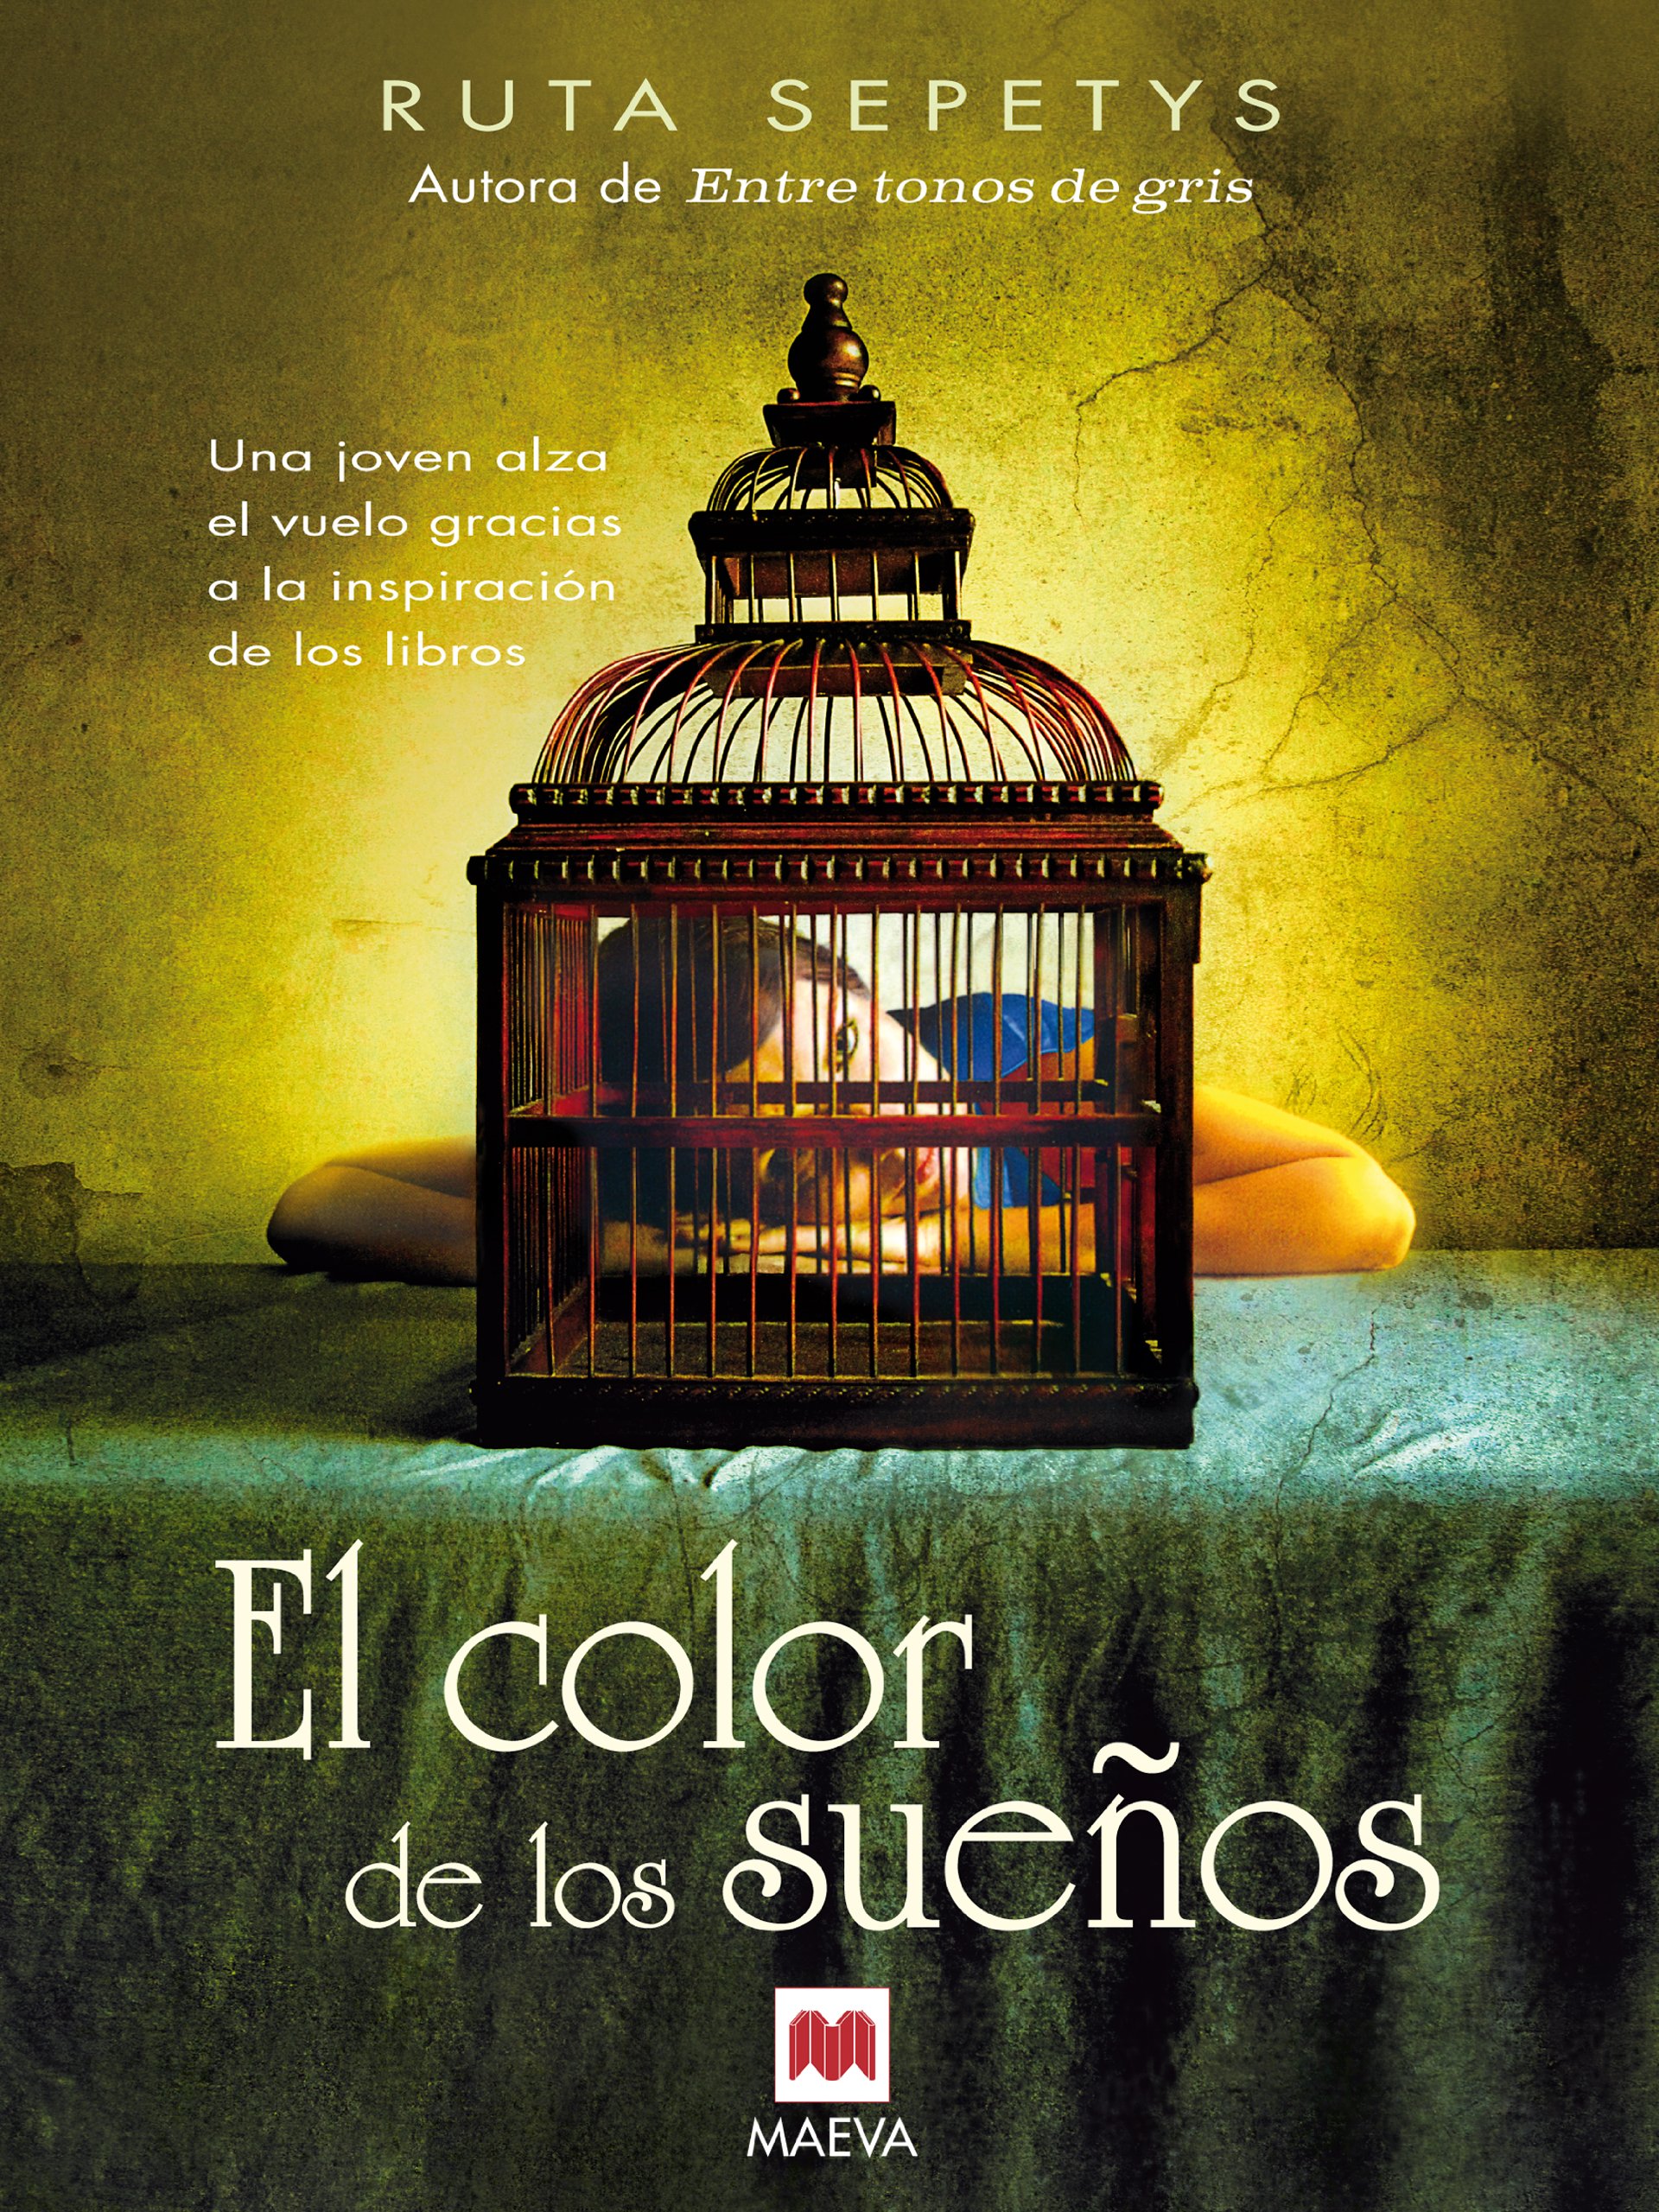 El color de los sueños: Una joven alza el vuelo gracias a la inspiración de los libros (Éxitos literarios) (Spanish Edition)